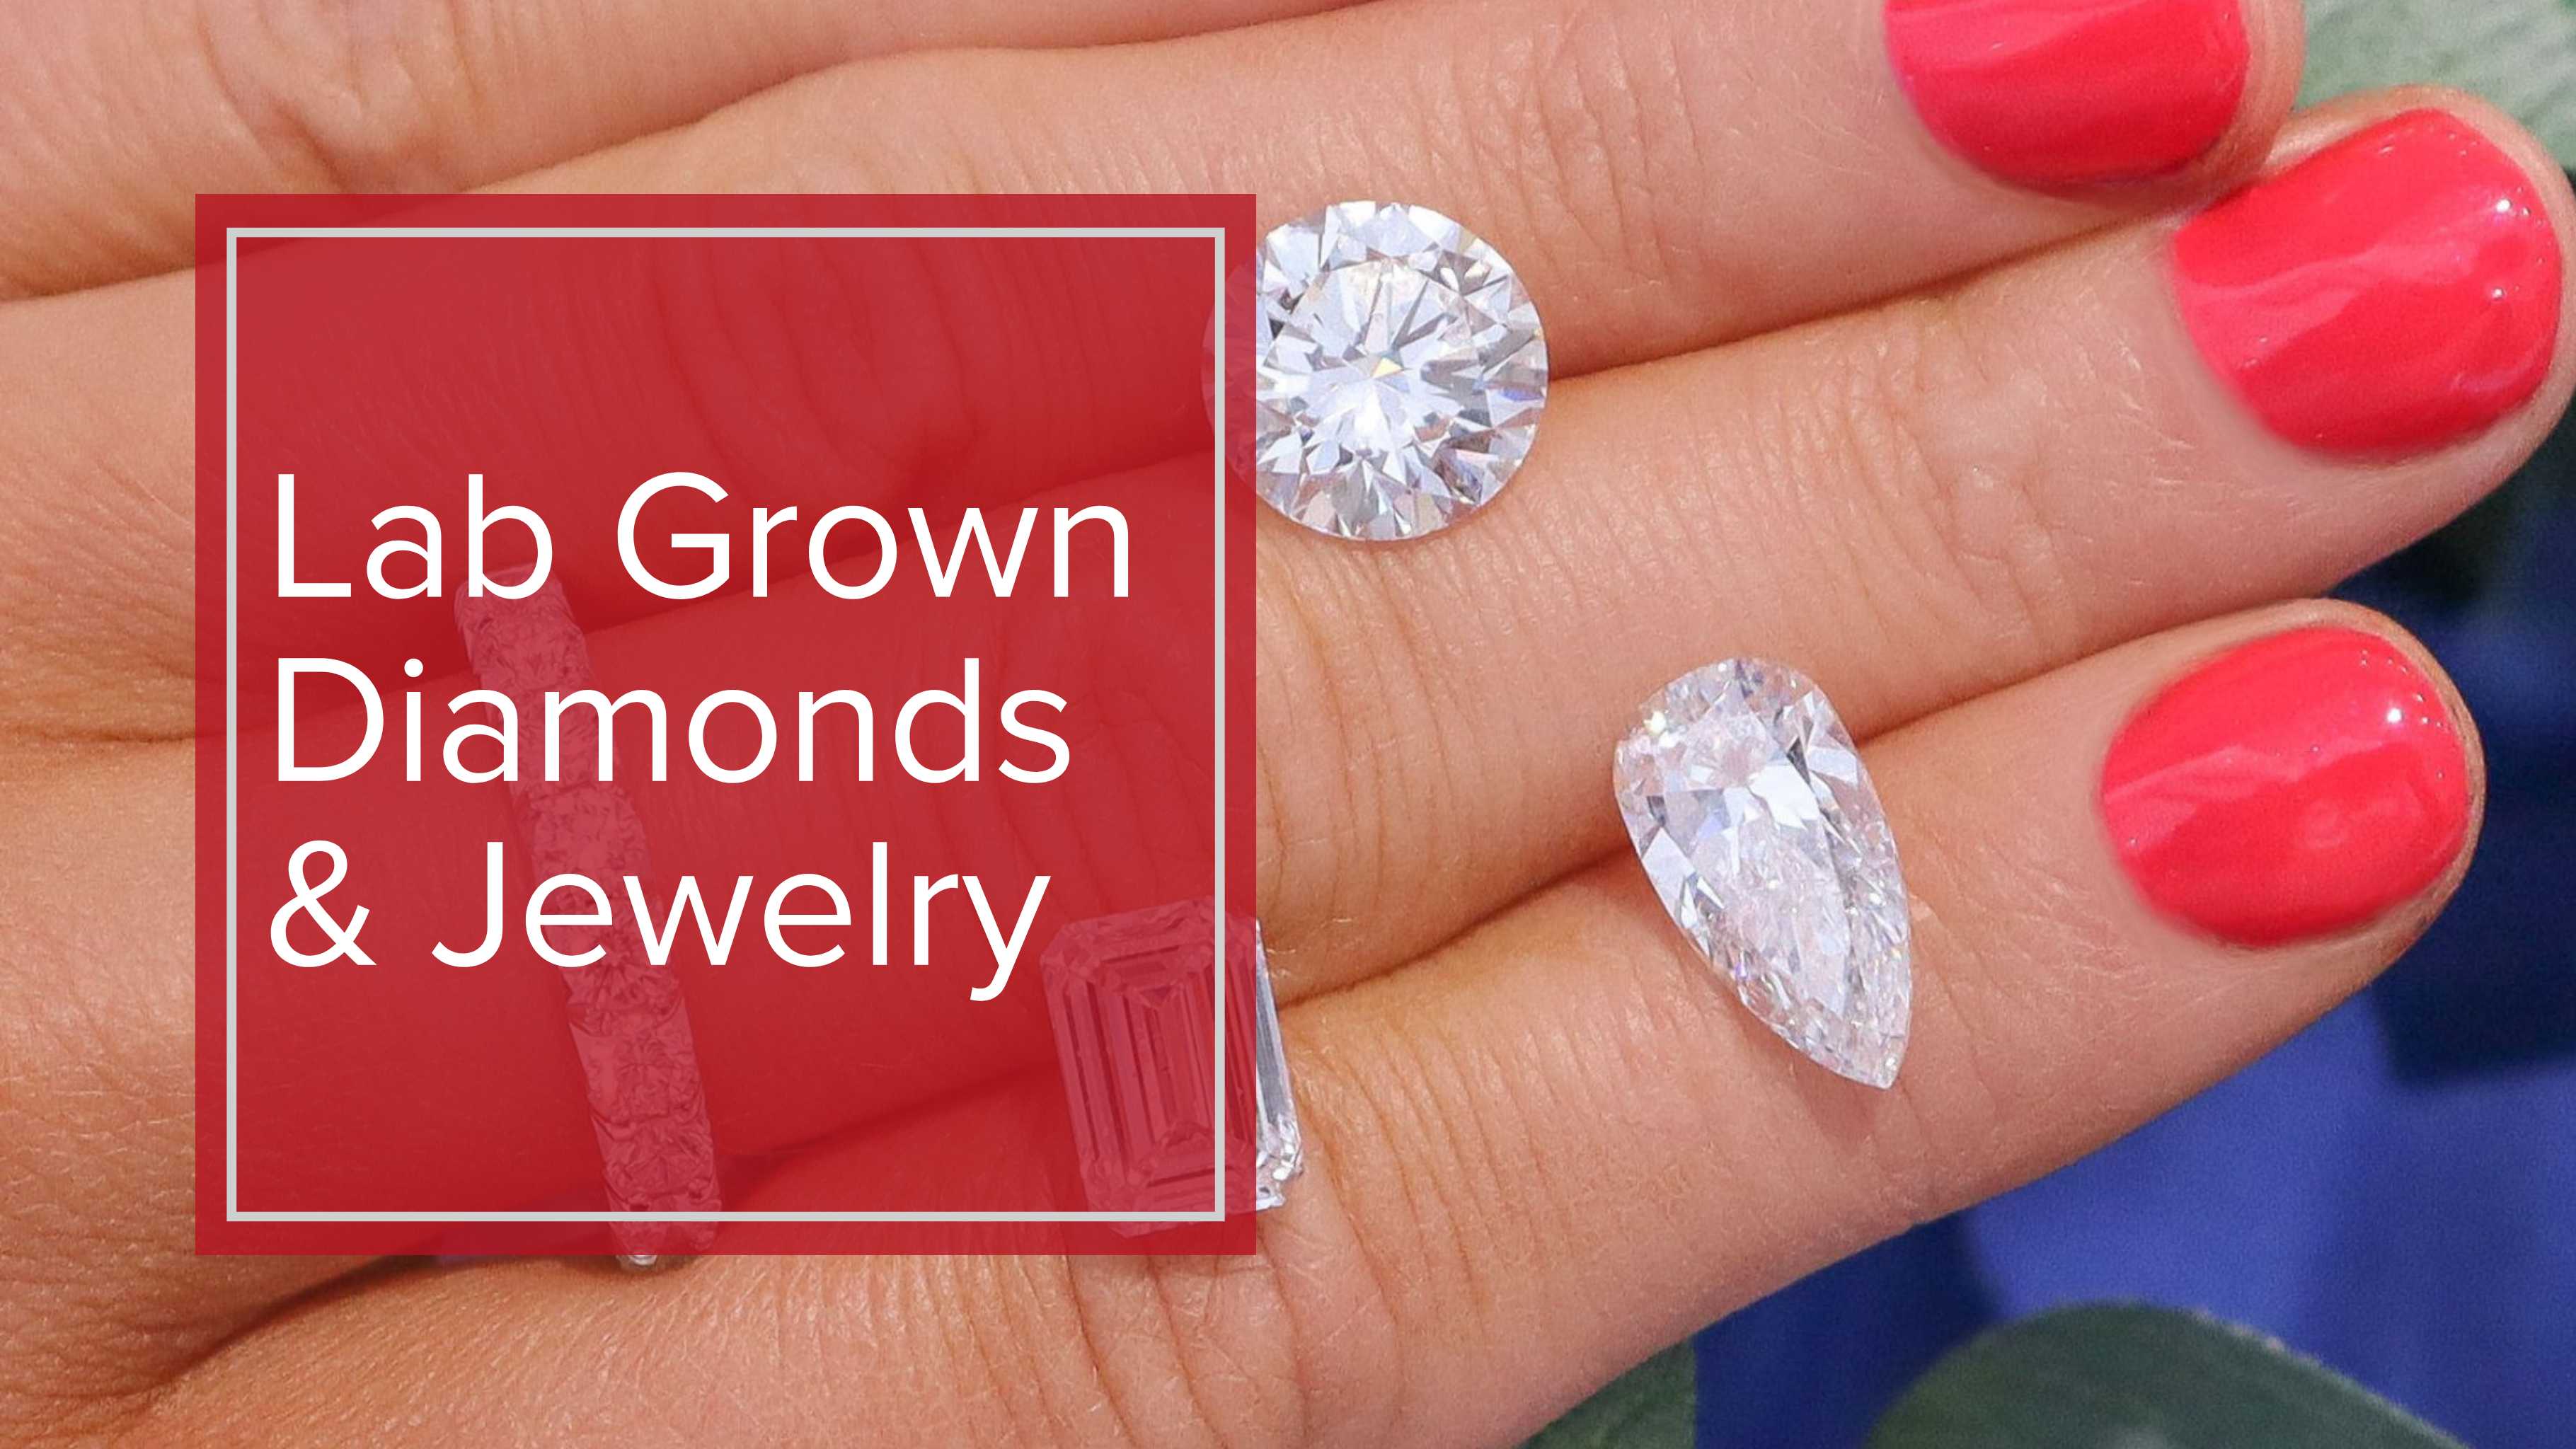 Lab Grown Diamonds & Jewelry